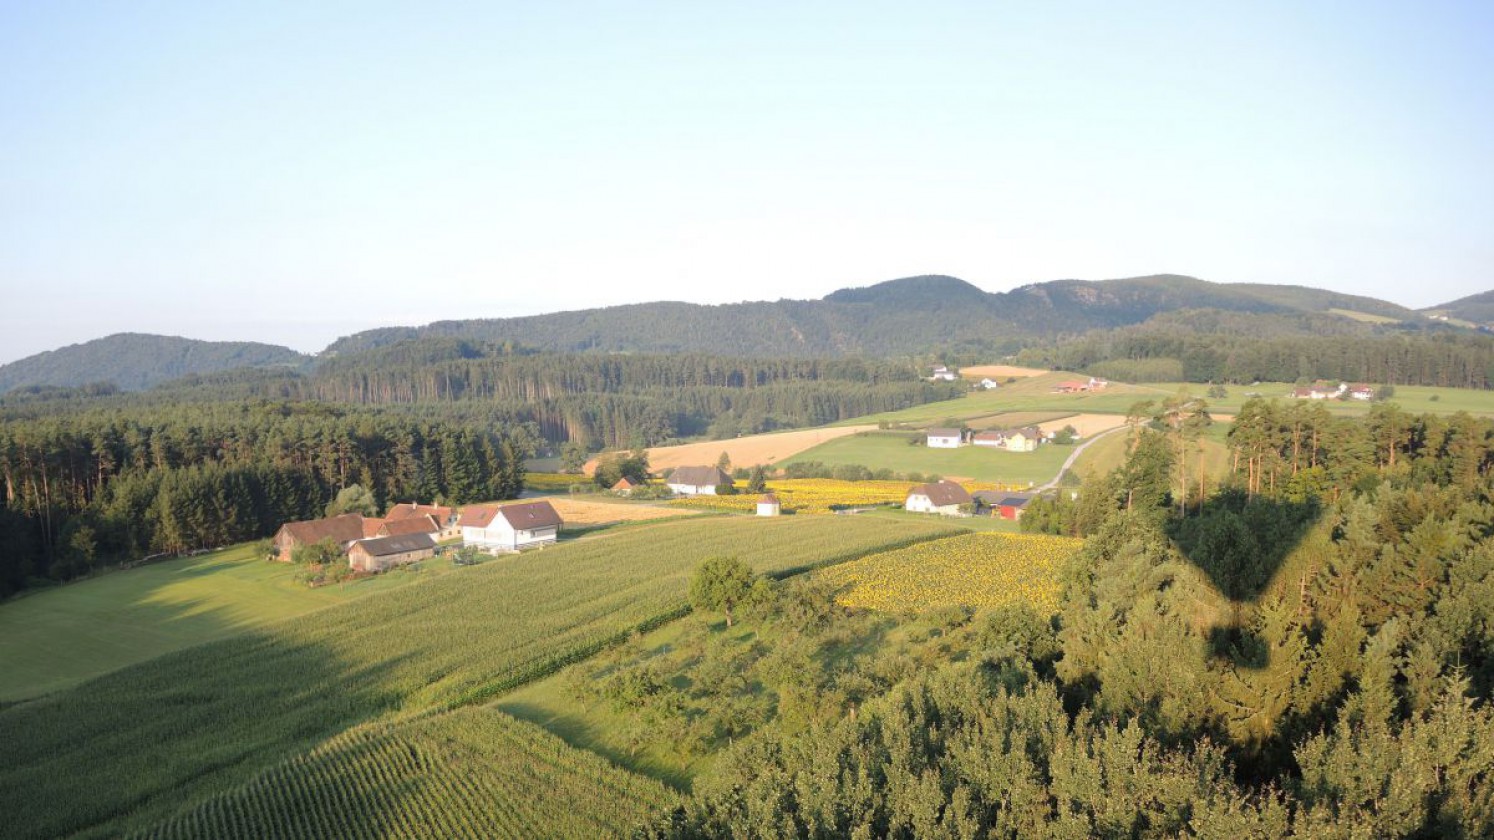 Landschaft in Niederösterreich von oben gesehen